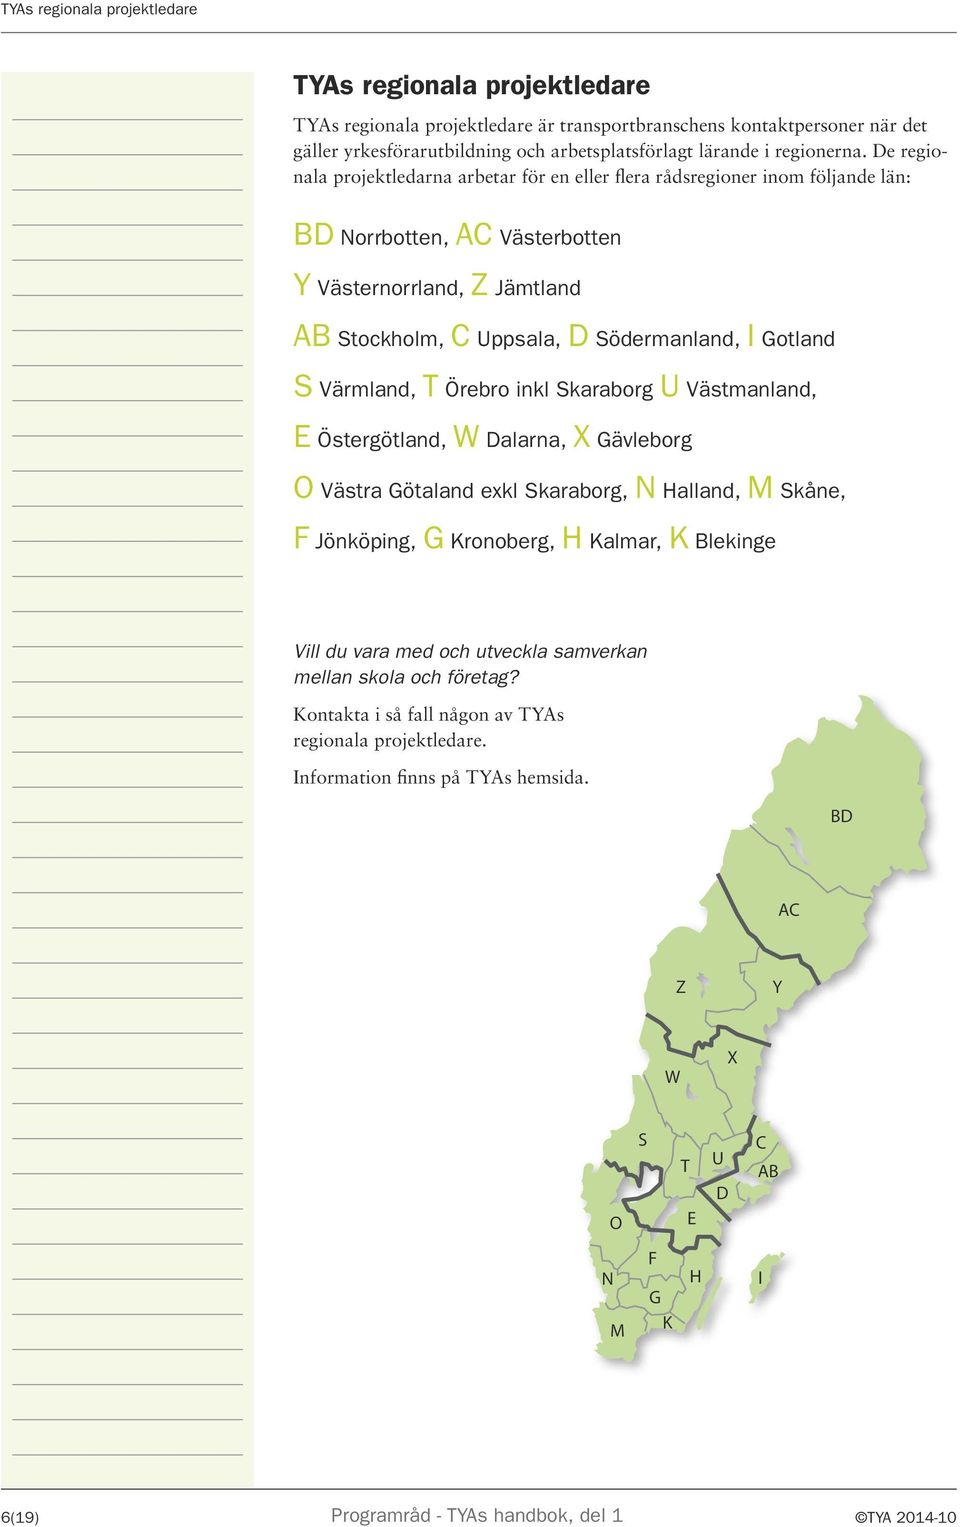 De regionala projektledarna arbetar för en eller flera rådsregioner inom följande län: BD Norrbotten, AC Västerbotten Y Västernorrland, Z Jämtland AB Stockholm, C Uppsala, D Södermanland, I Gotland S